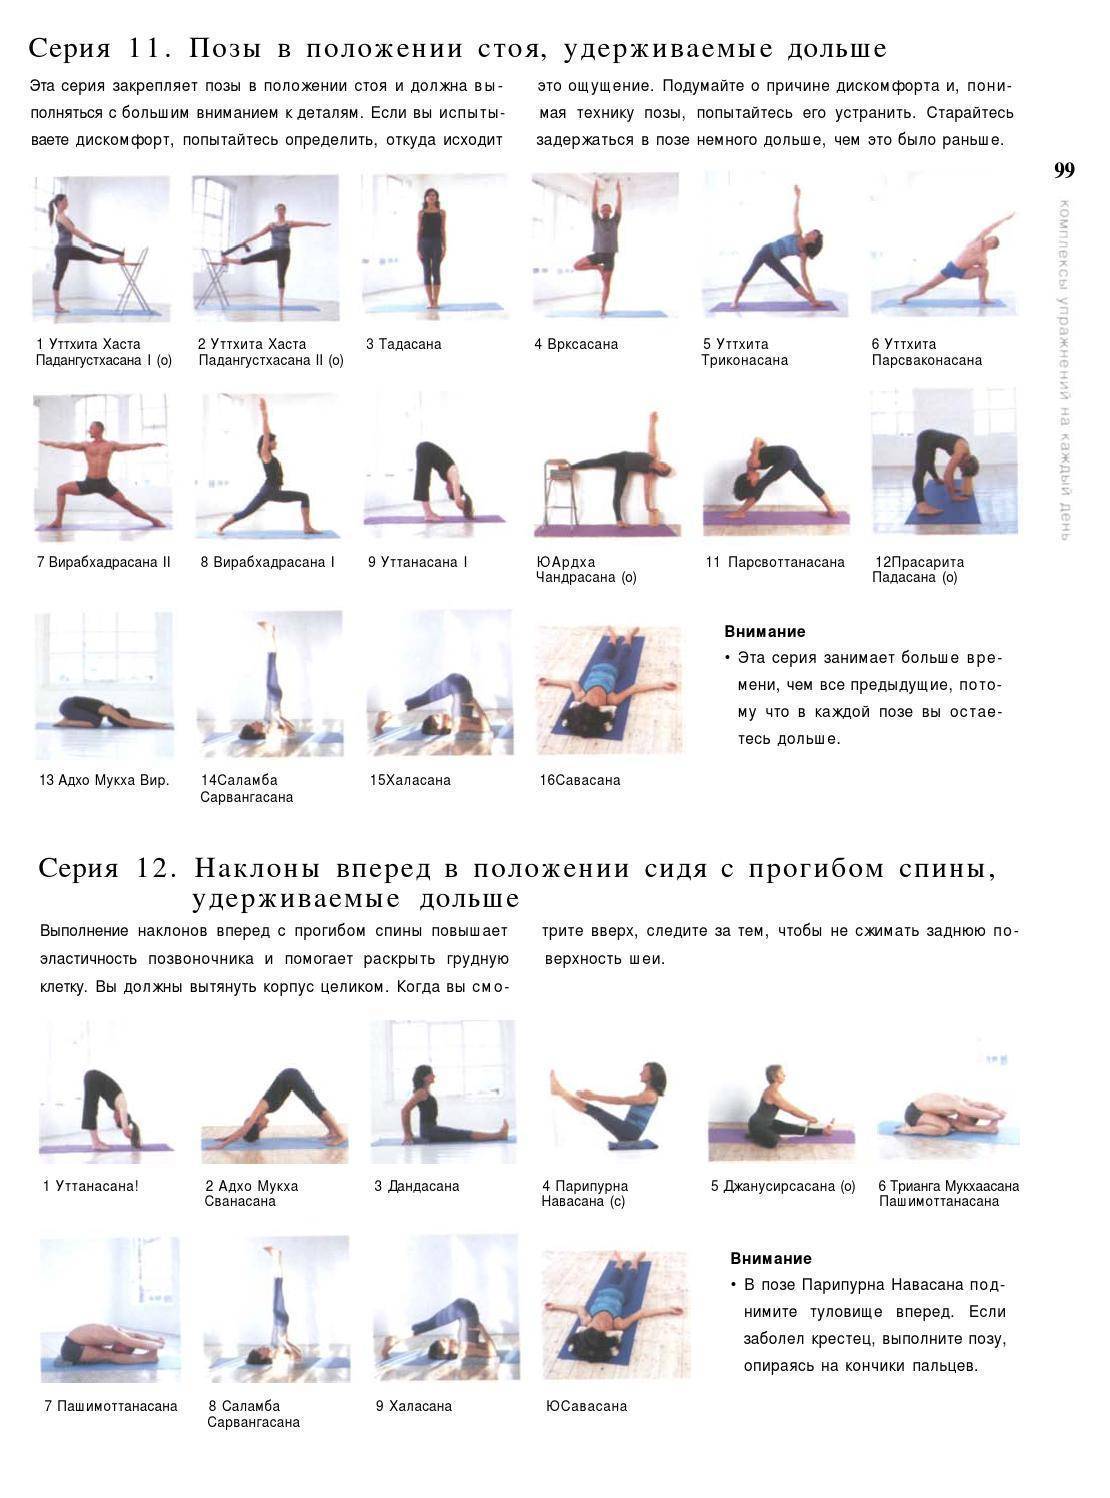 Cловарь йога | федерация йоги россии – федерация йоги россии